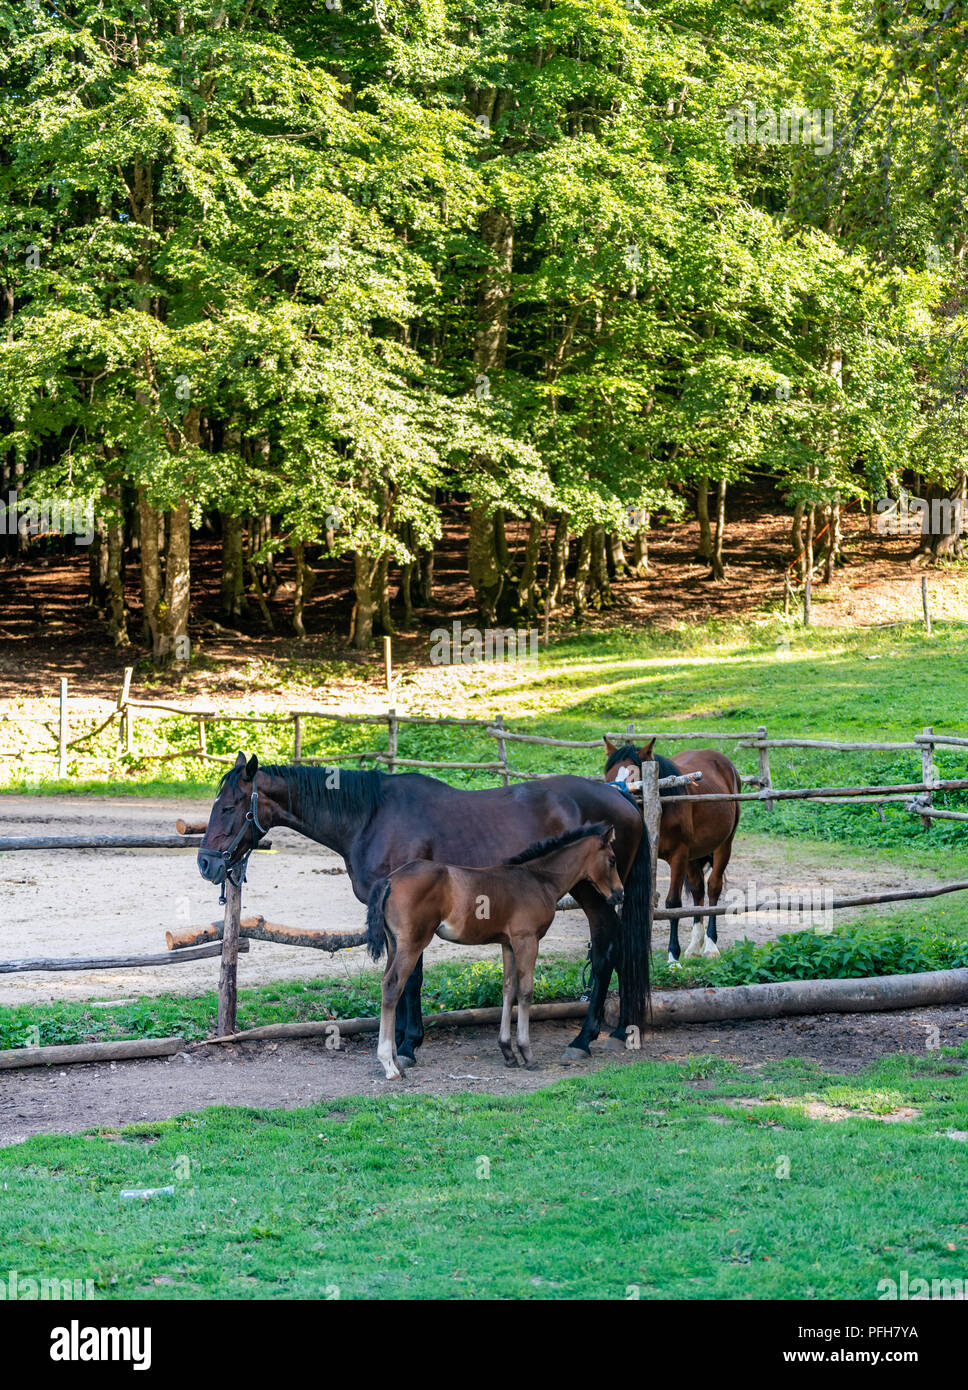 Trois chevaux en équitation deux adultes et un colt scène tranquille, forêt en arrière-plan Banque D'Images